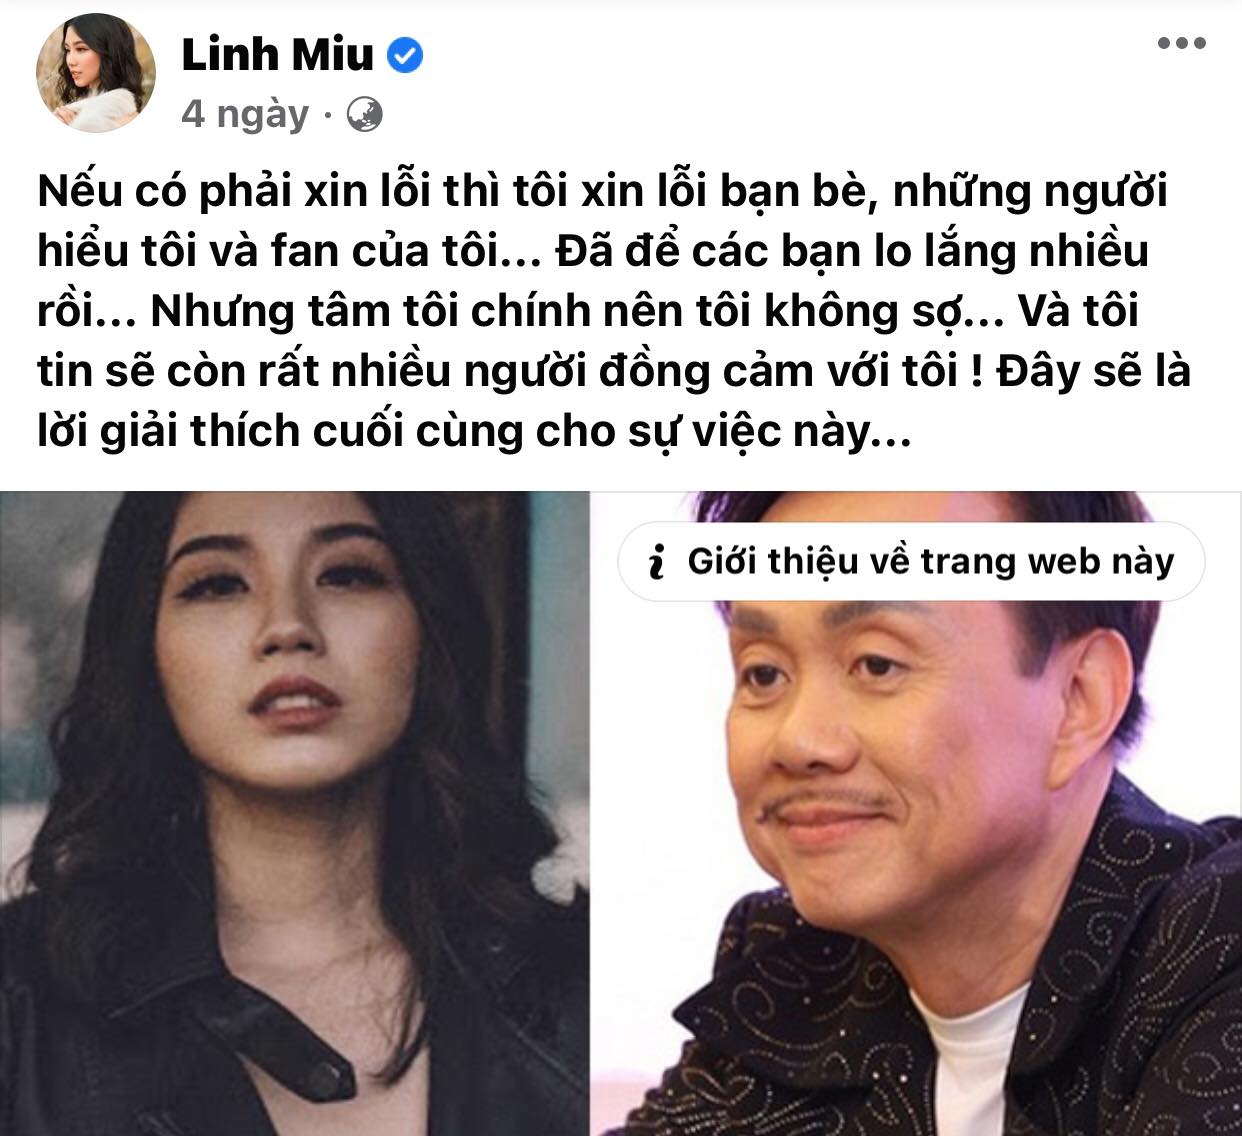 Linh-miu-nhap-vien-chi-tai